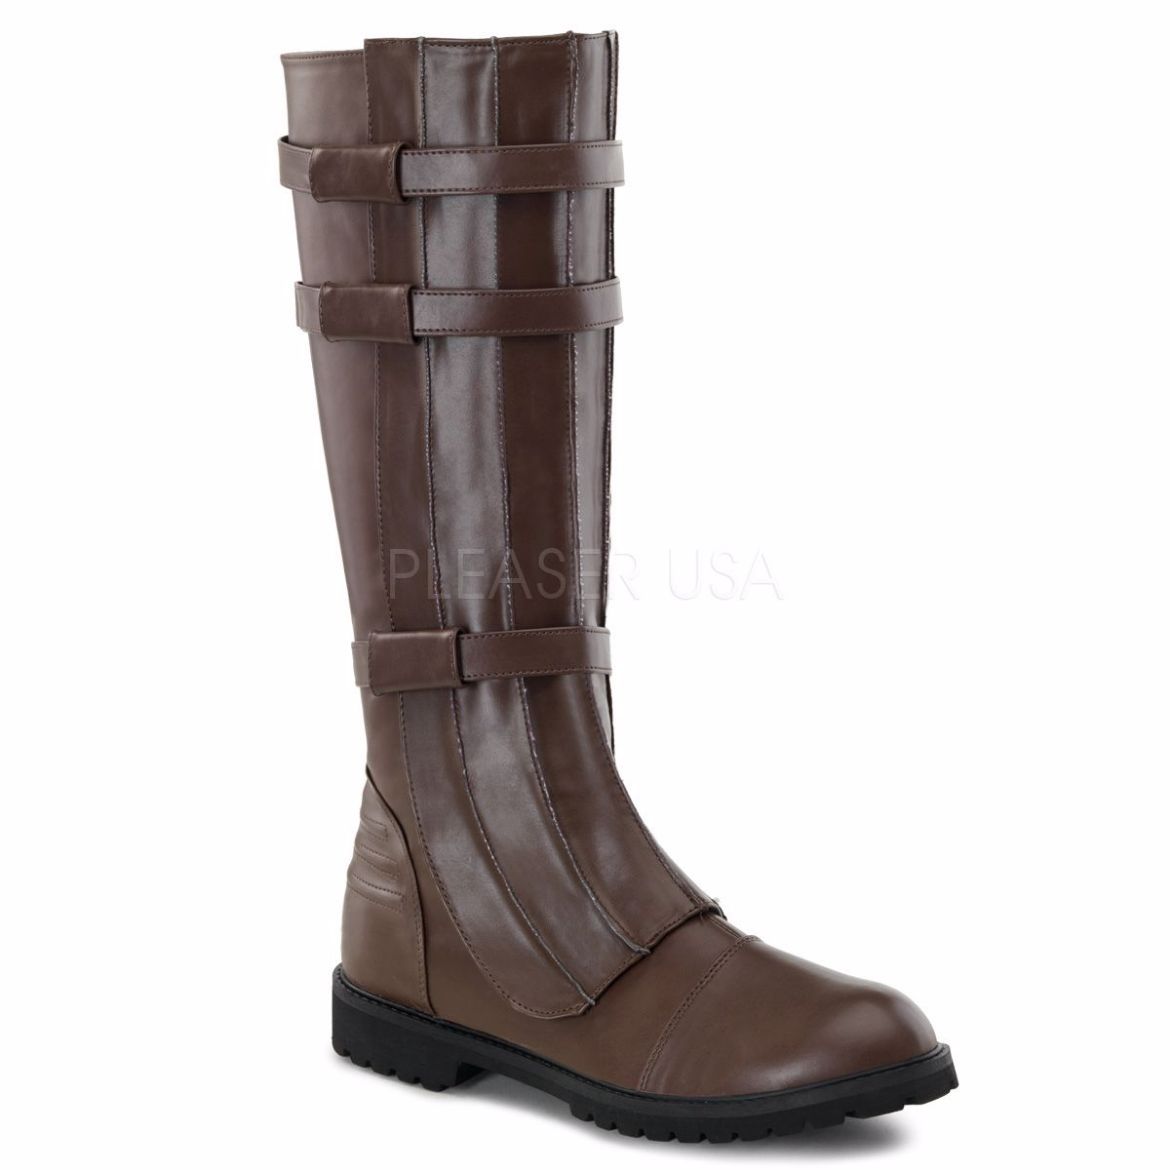 Product image of Funtasma Walker-130 Brown Pu, 1 1/4 inch (3.2 cm) Heel Knee High Boot